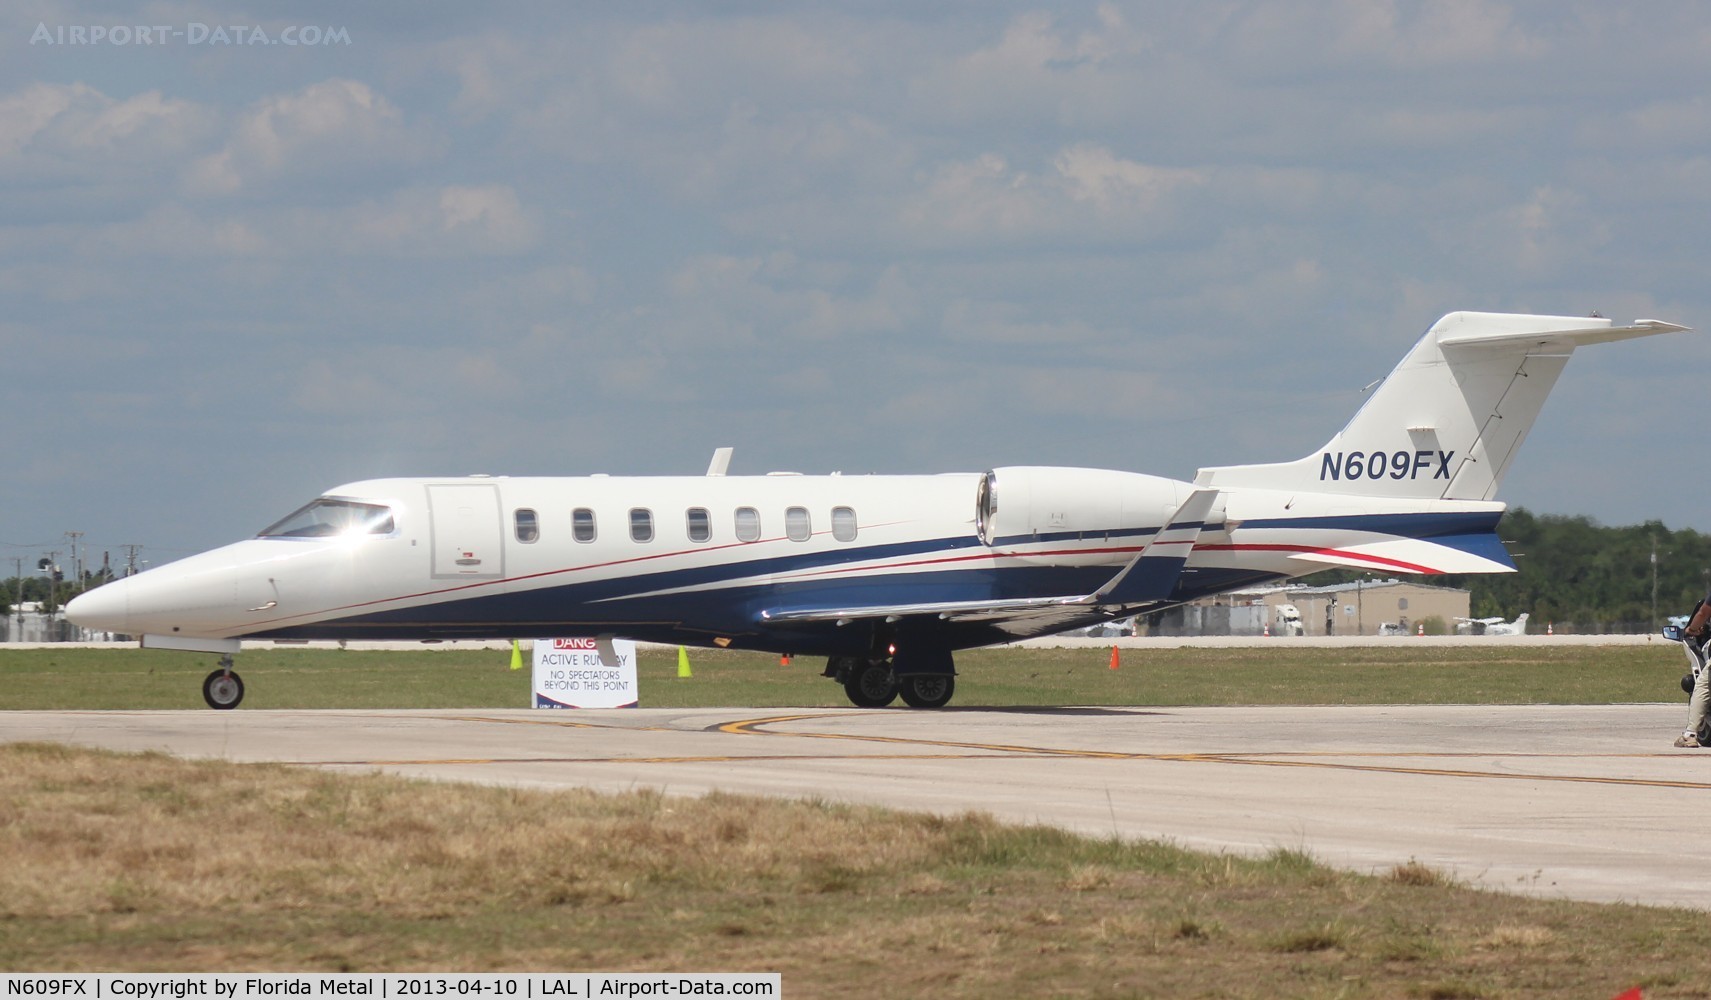 N609FX, 2005 Learjet Inc 45 C/N 2022, Lear 40